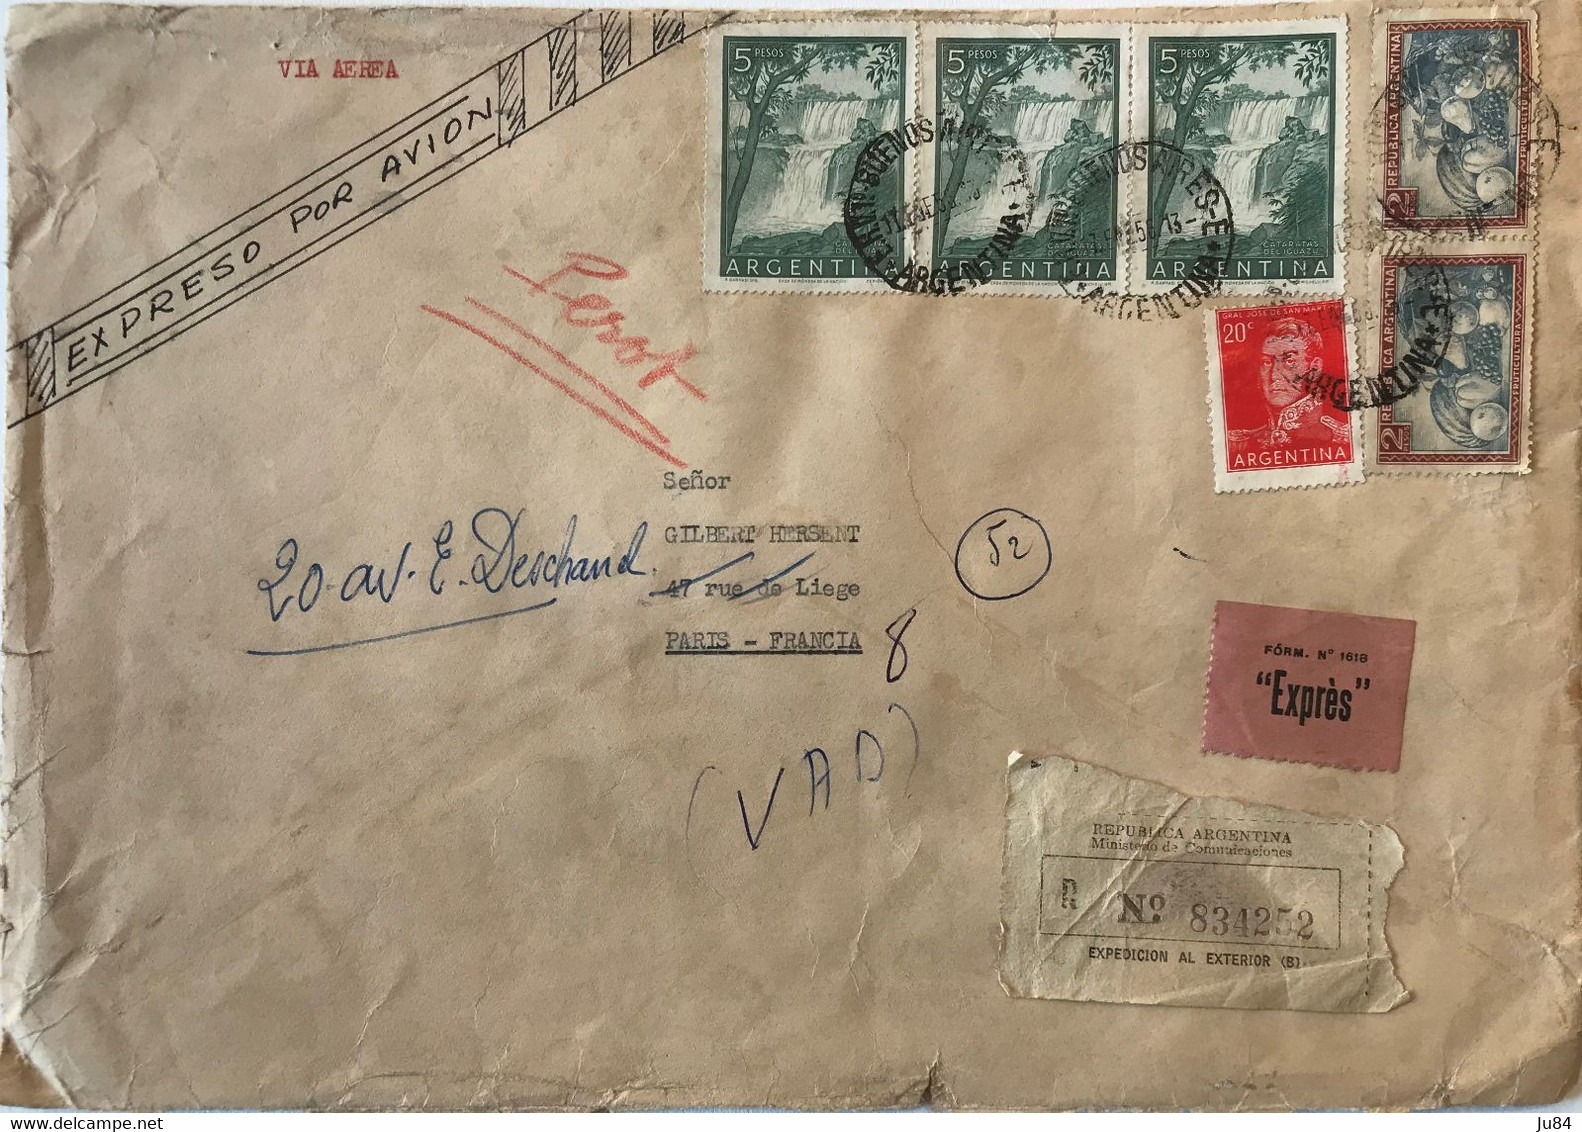 Argentine - Buenos Aires - Lettre Recommandée Avion Express Pour Paris (France) - Bel Affranchissement - 1956 - Oblitérés